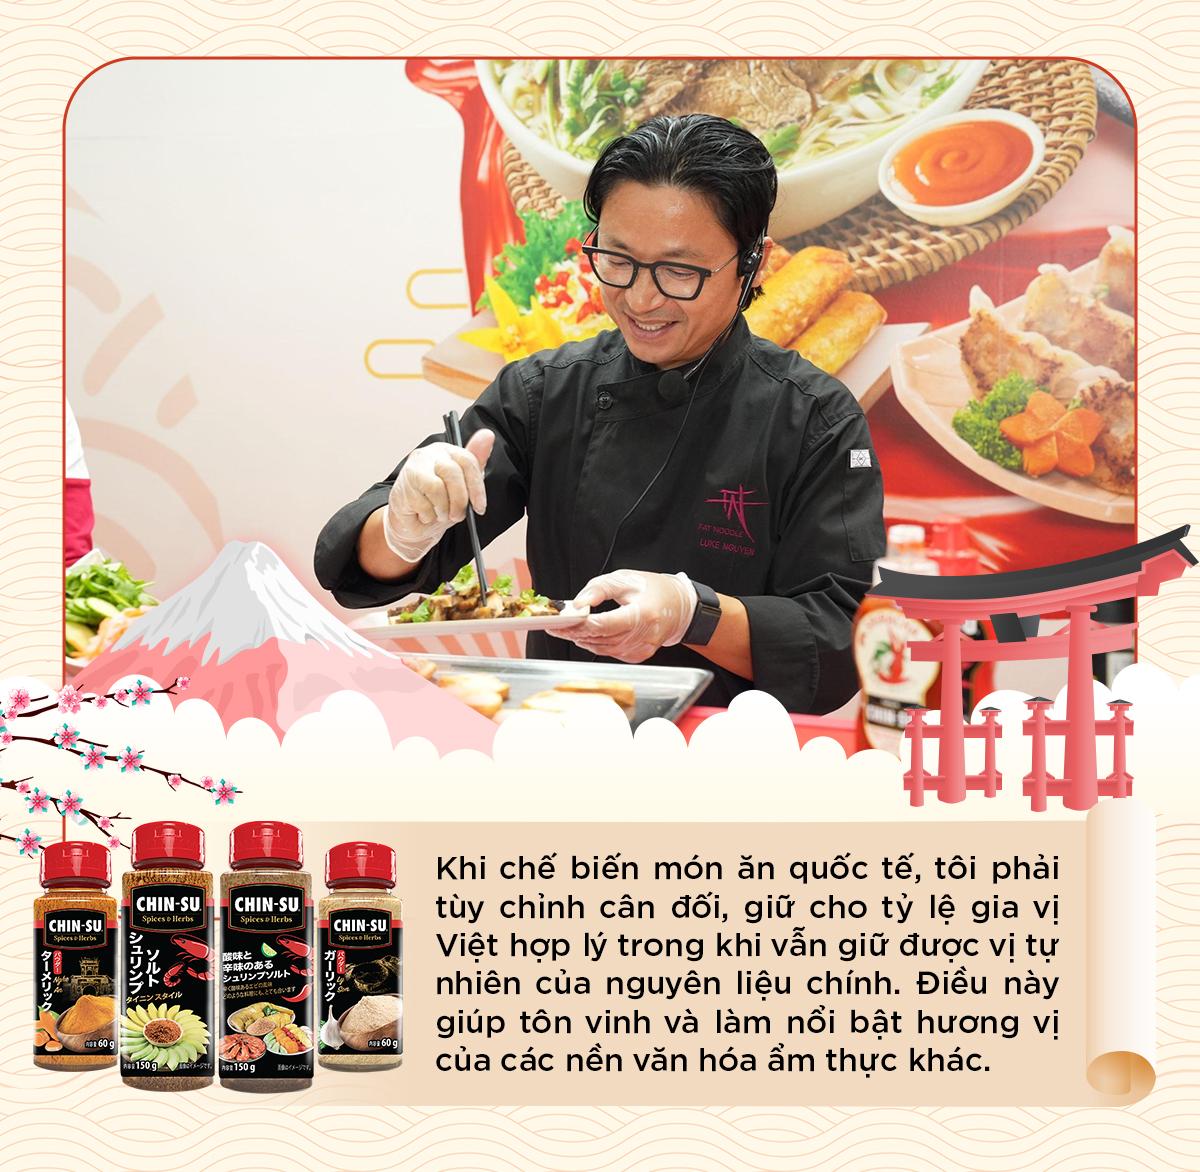 Bí quyết nêm nếm tròn vị của “phù thủy ẩm thực” Luke Nguyễn thu hút thực khách đến với món Việt - Ảnh 5.